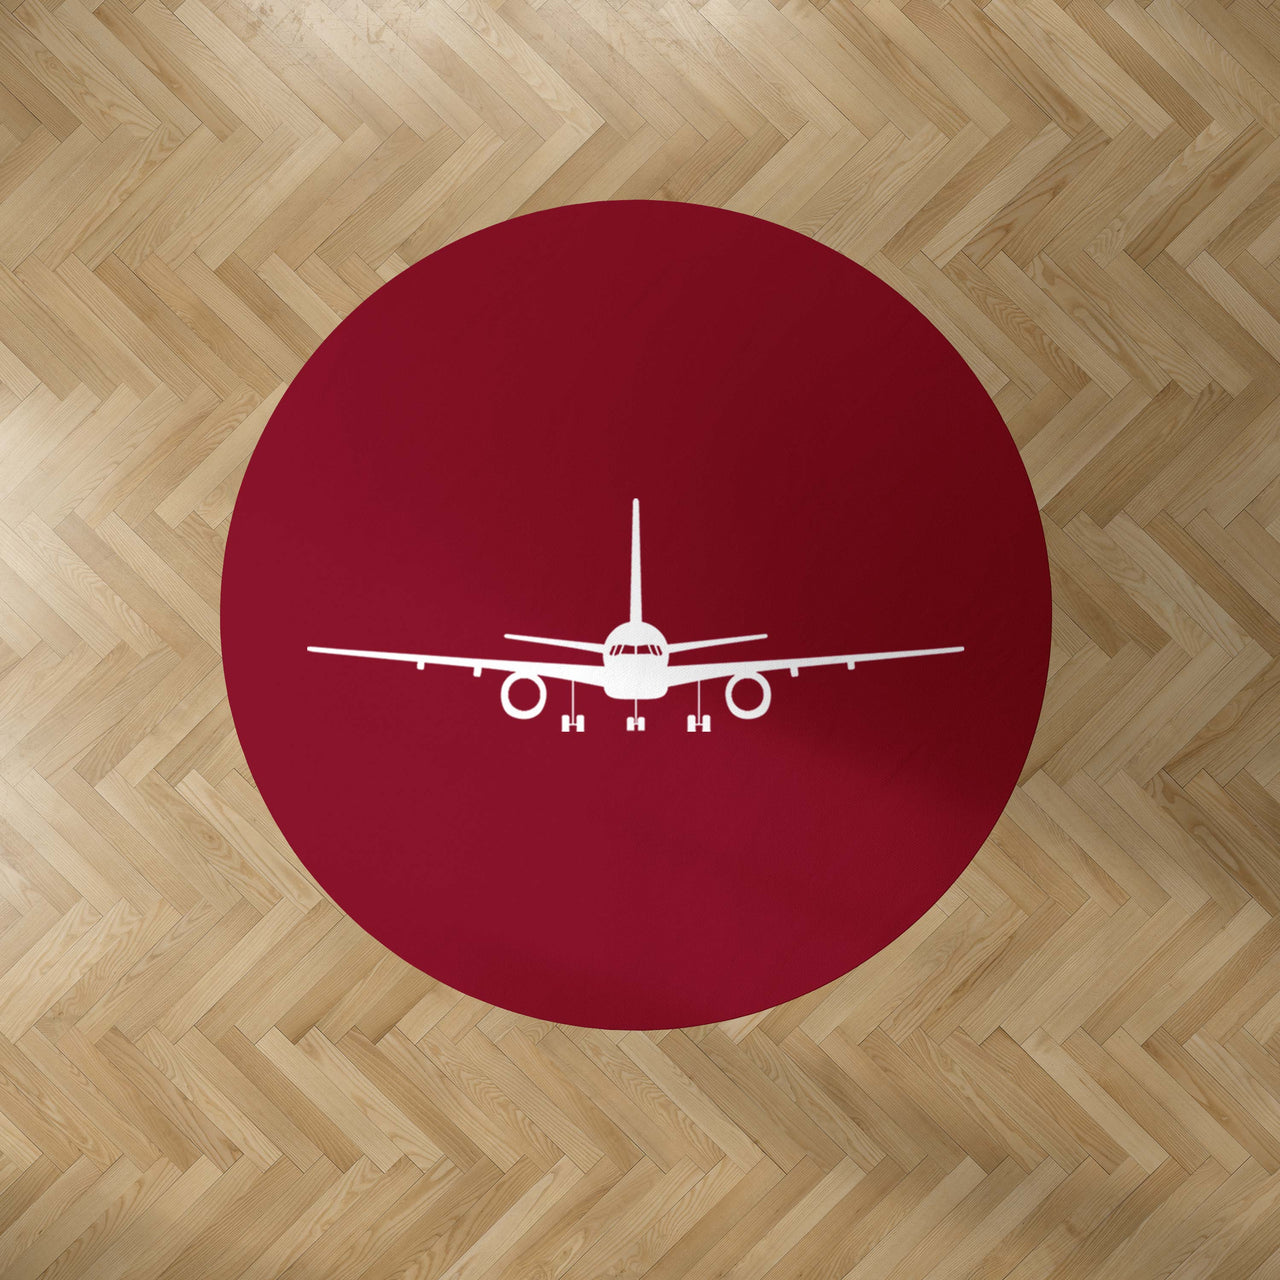 Boeing 757 Silhouette Designed Carpet & Floor Mats (Round)